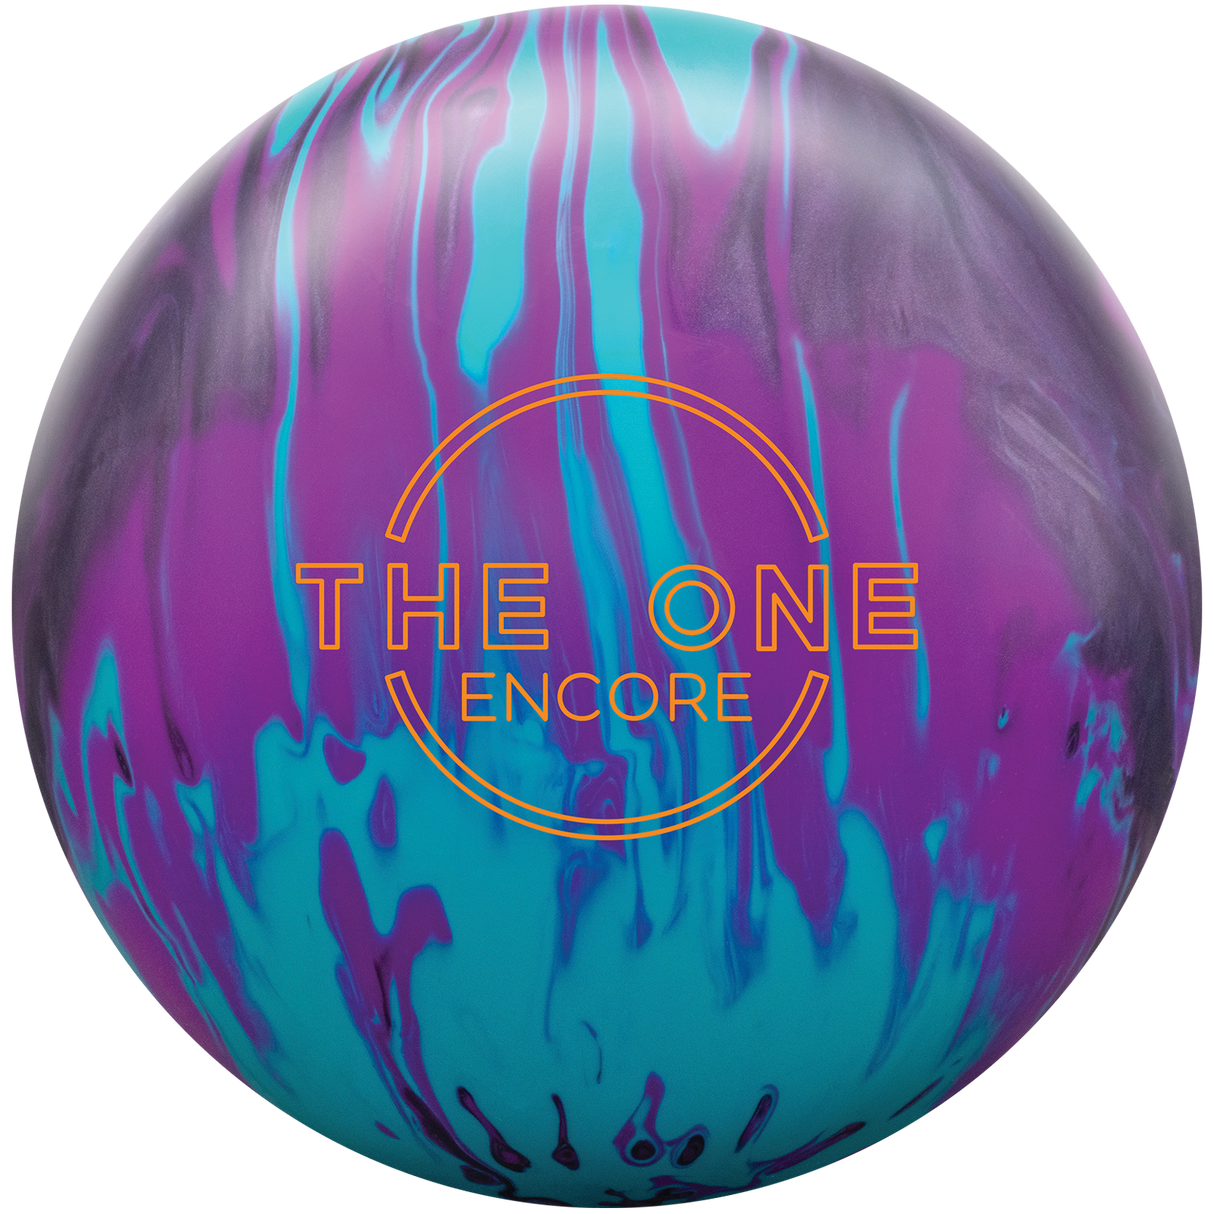 ebonite-the-one-encore bowling ball insidebowling.com